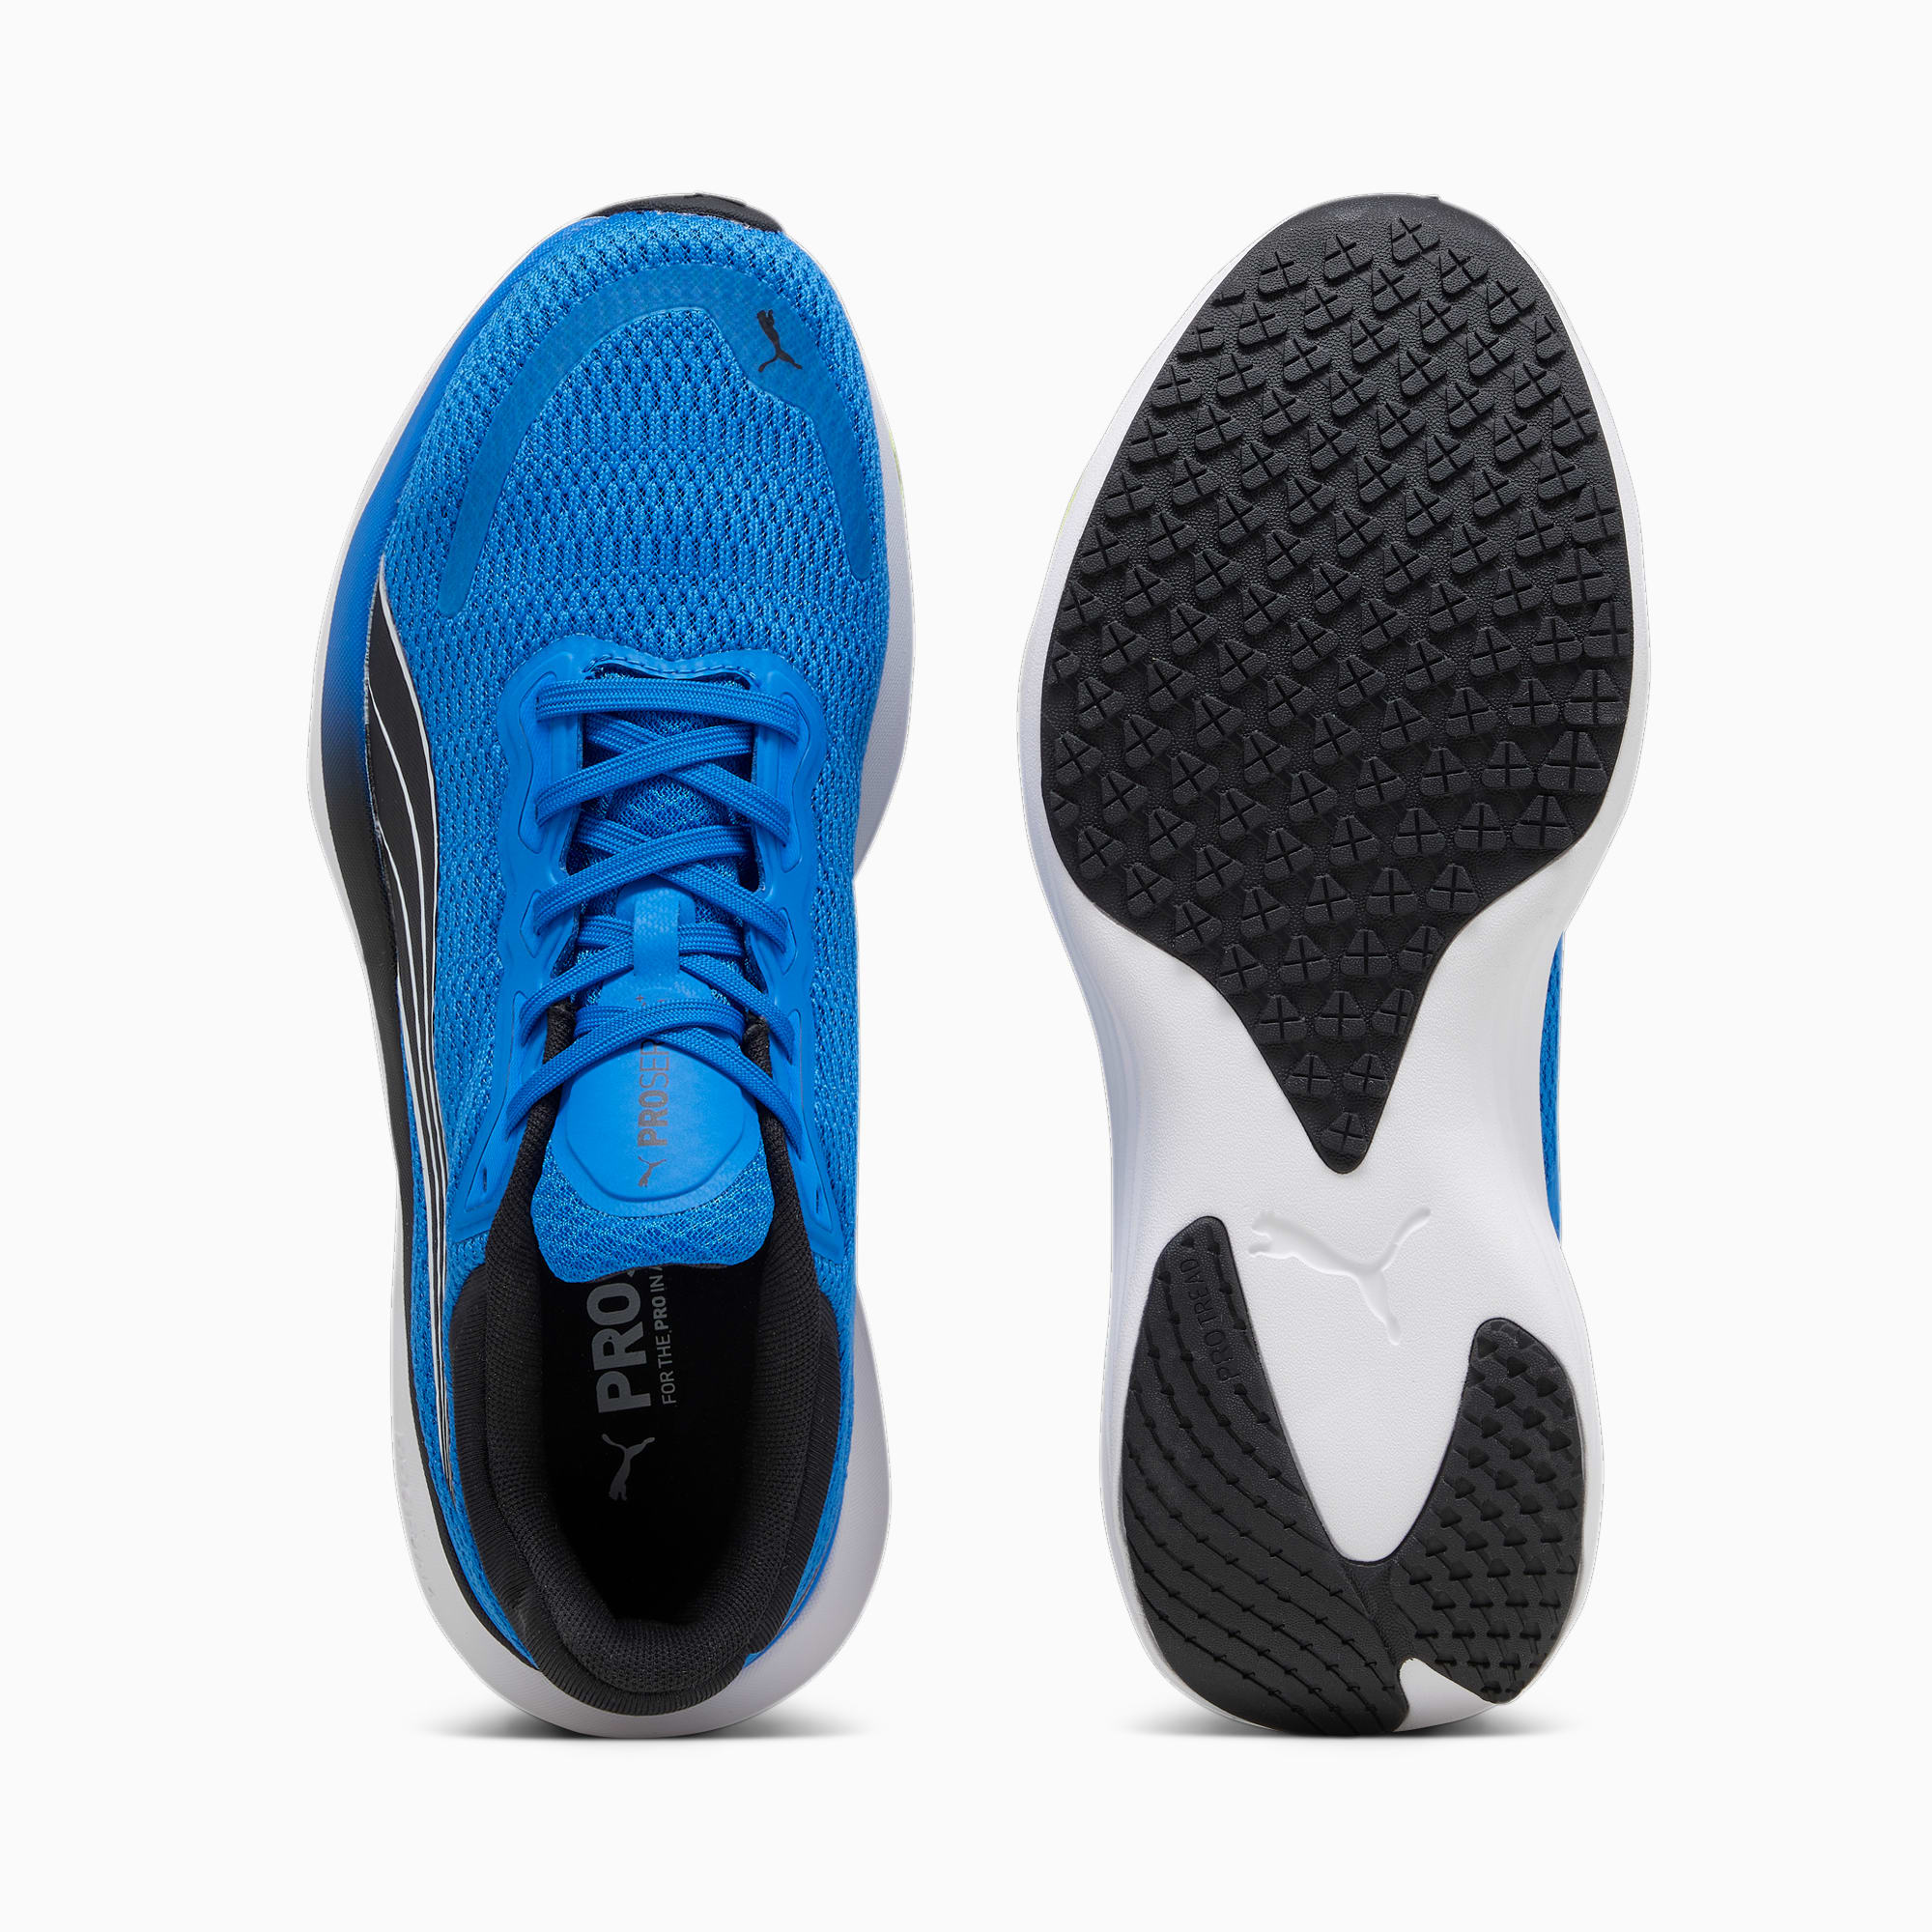 PUMA Chaussures De Running Scend Pro, Bleu/Noir/Blanc